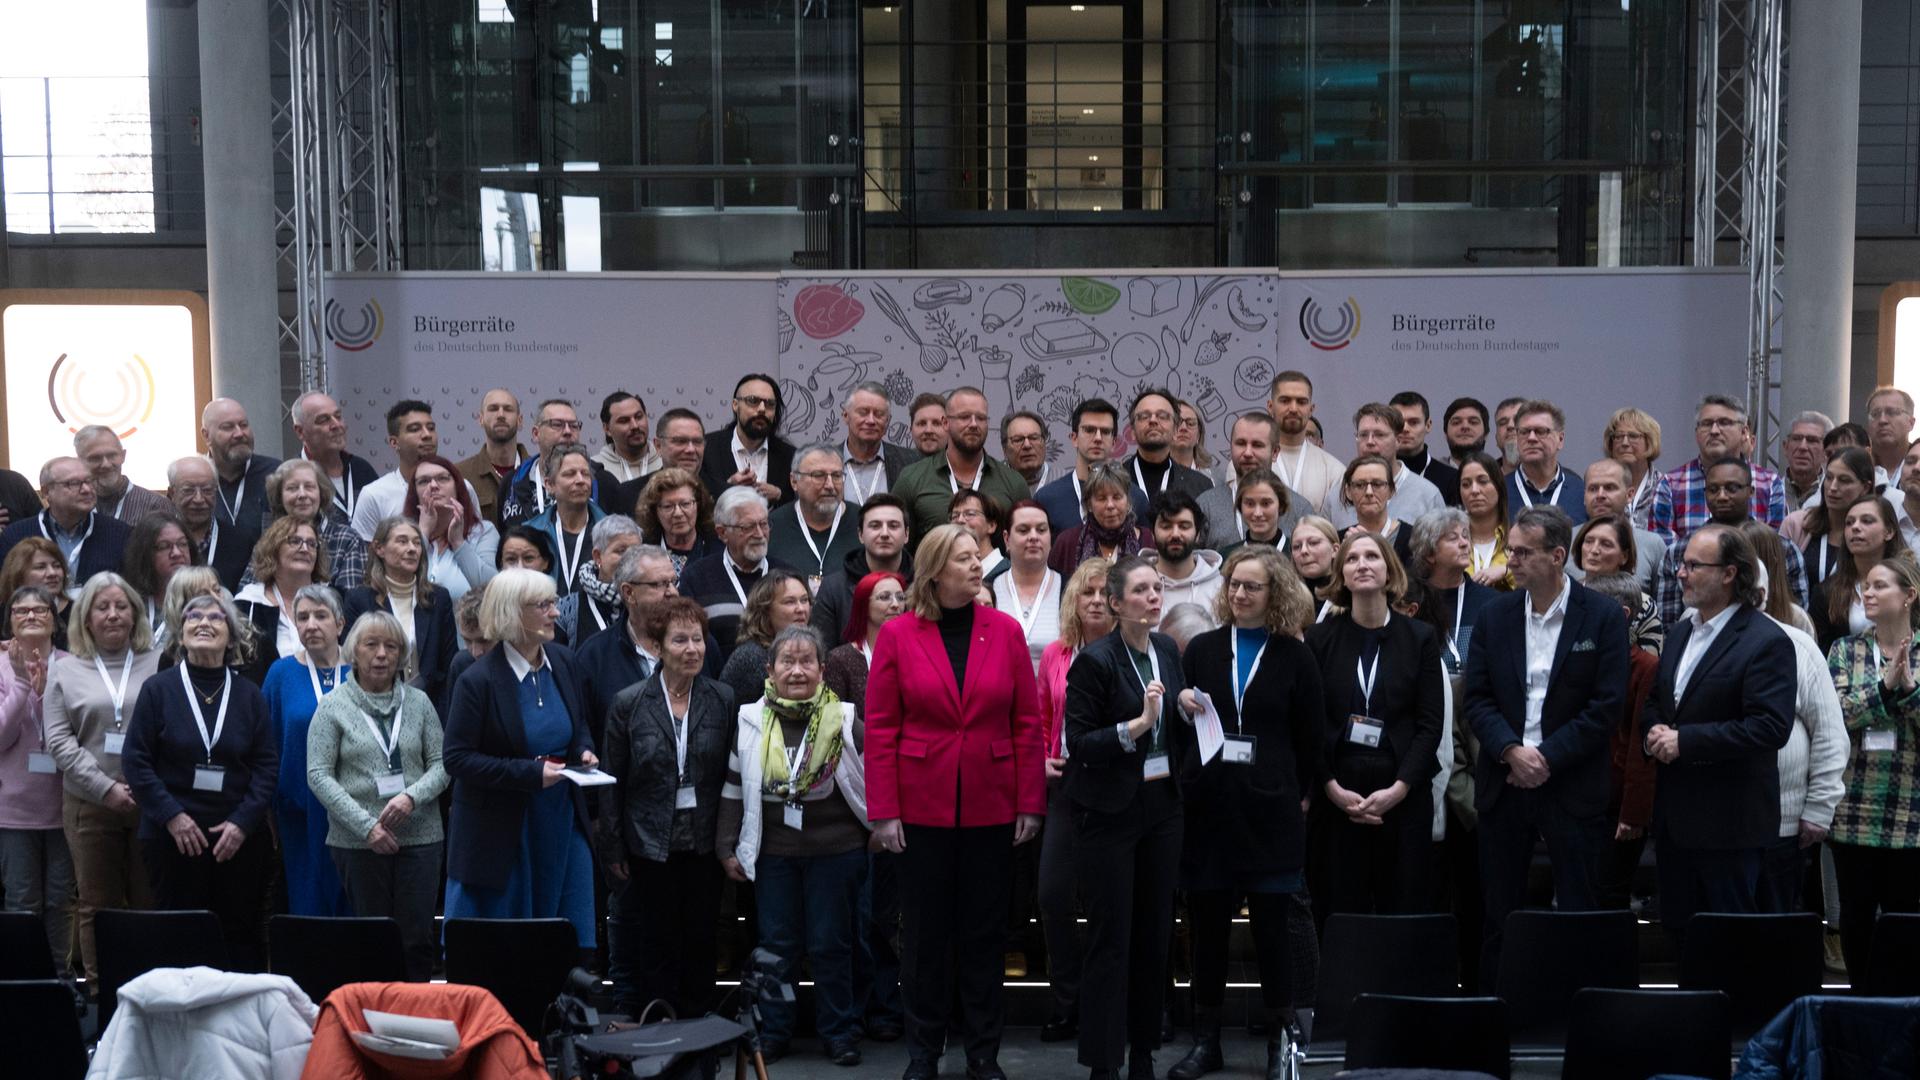 Die Mitglieder des Bürgerrats stehen aufgereiht im Bundestag, vorne in der Mitte steht Bundestagspräsidentin Bärbel Bas. Sie trägt ein pinkfarbenes Sakko.